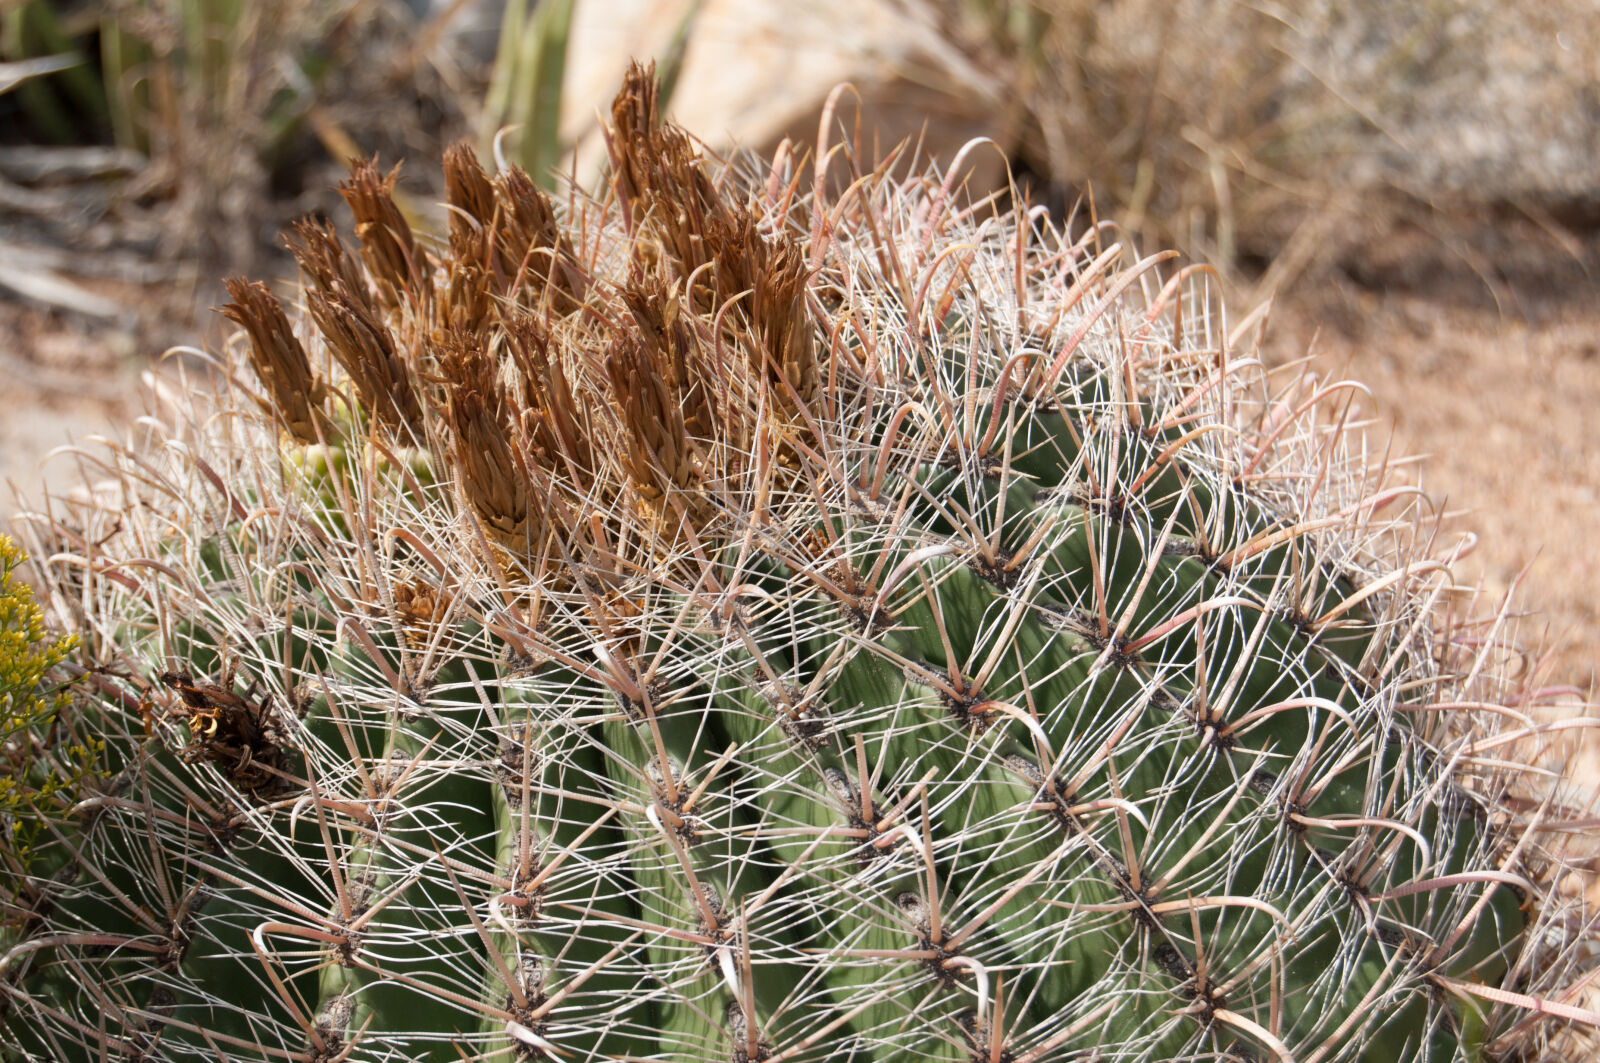 AF-S DX Zoom-Nikkor 18-55mm f/3.5-5.6G ED sample photo. Cactus, desert, nature photography